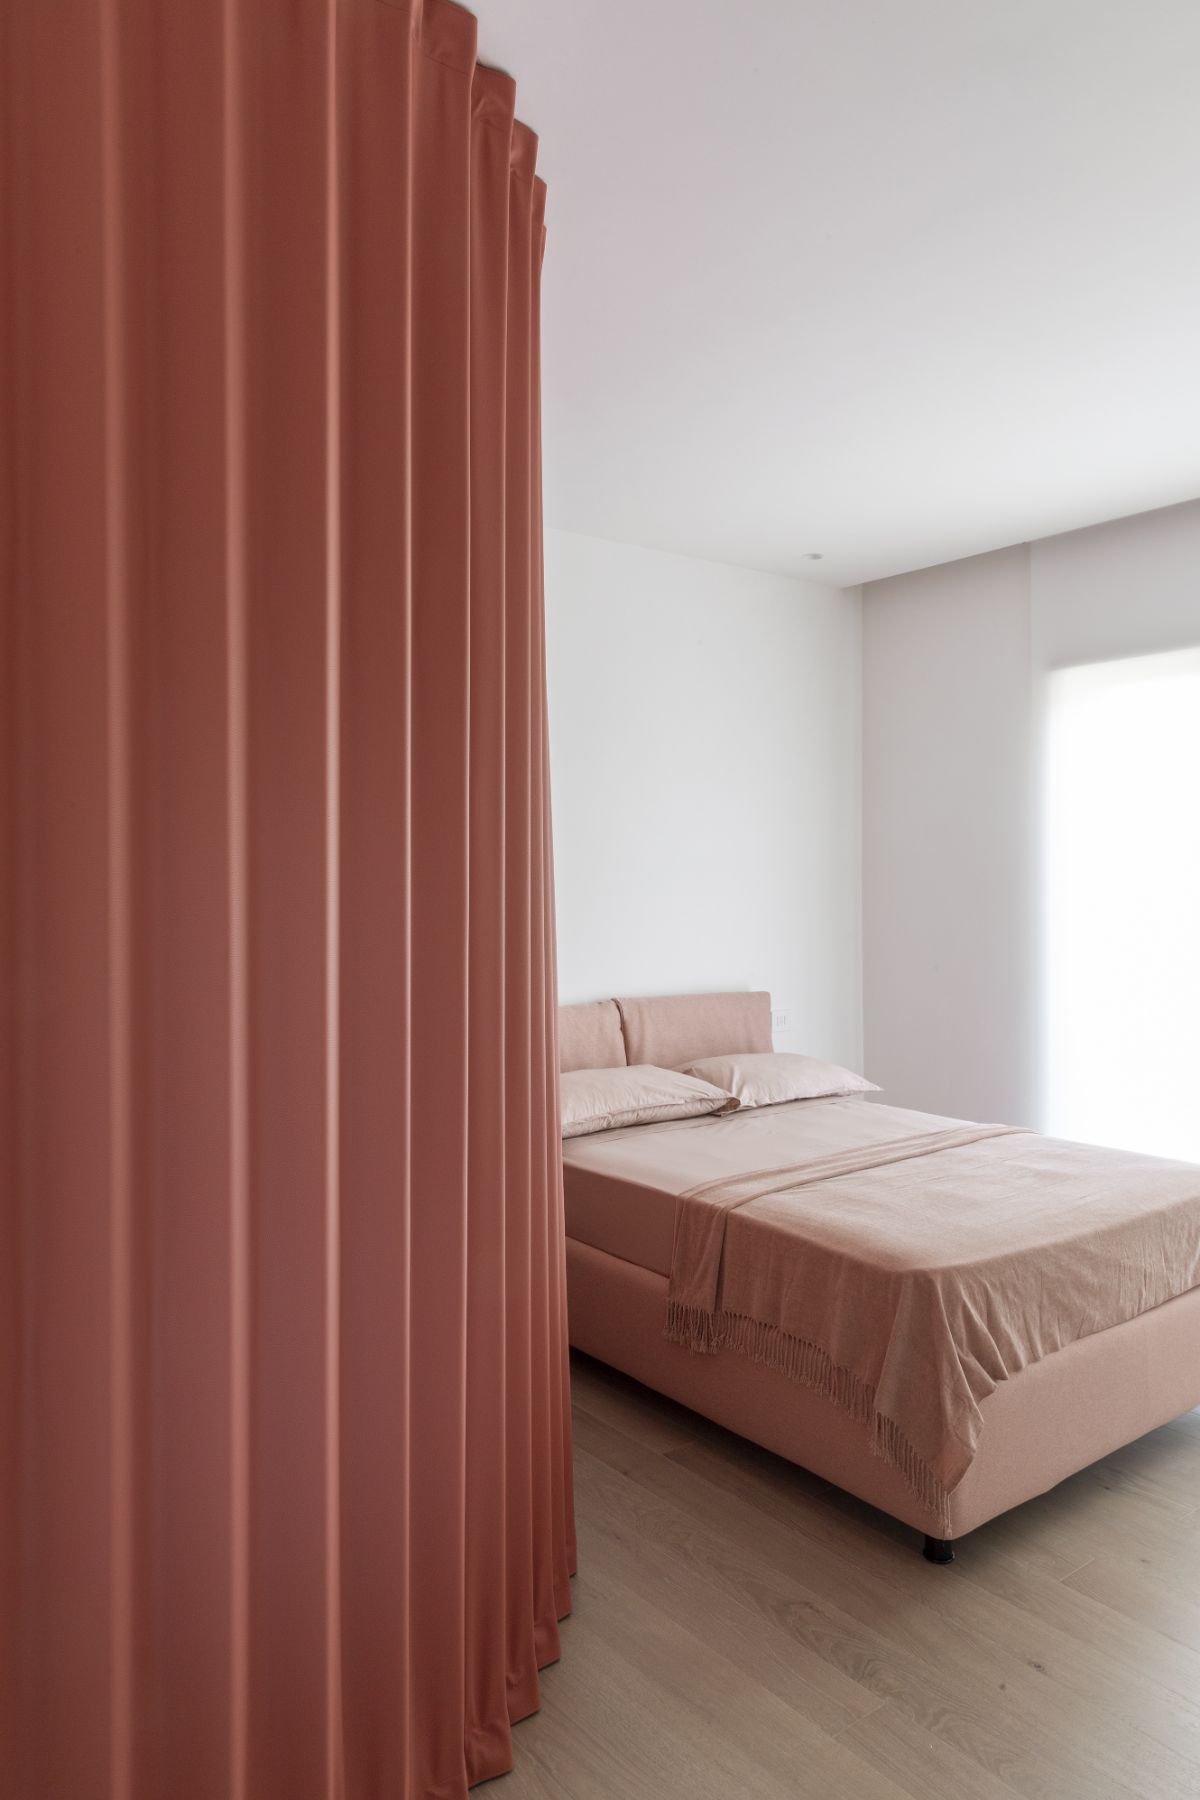 卧室功能磨砂墙和窗帘,提供隐私。